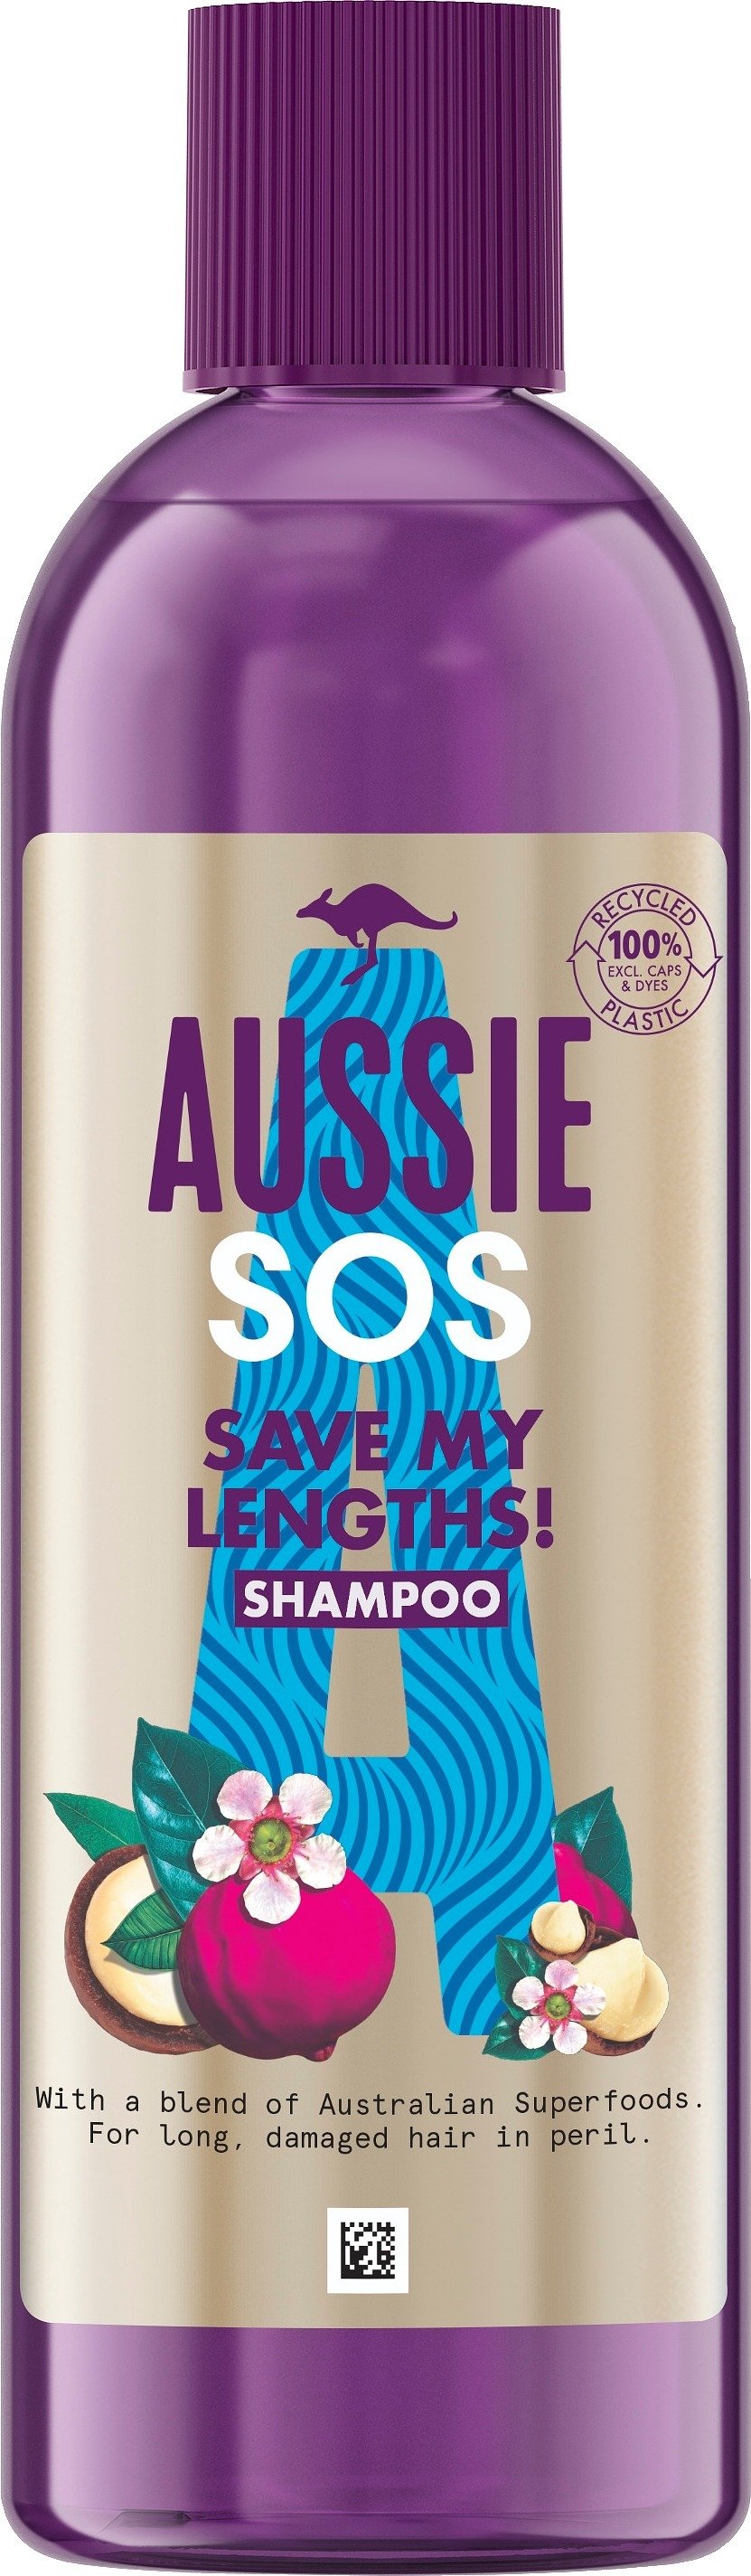 Aussie SOS Save My Lengths! Schampo 290 ml